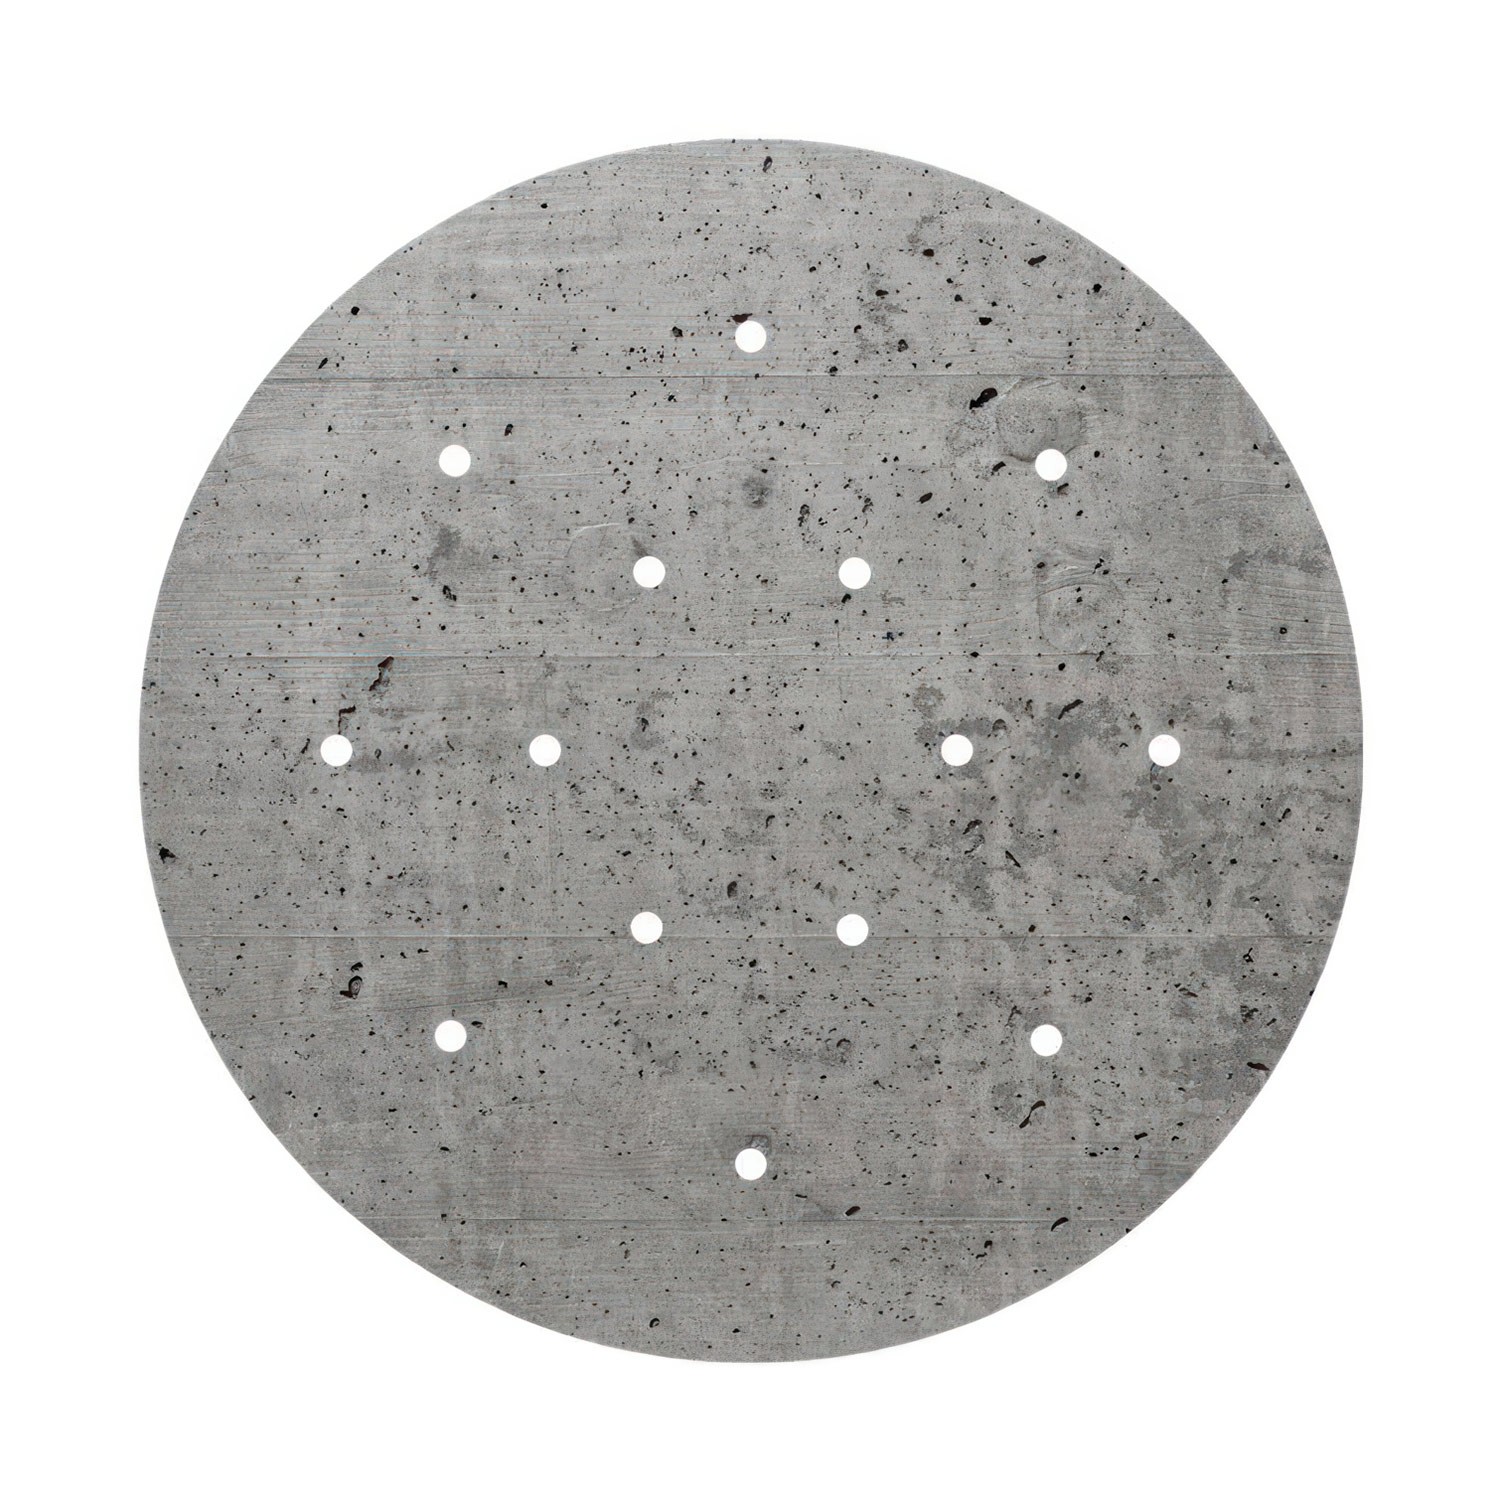 Tapa redonda para Sistema Rose-One perforada, diámetro 400 mm